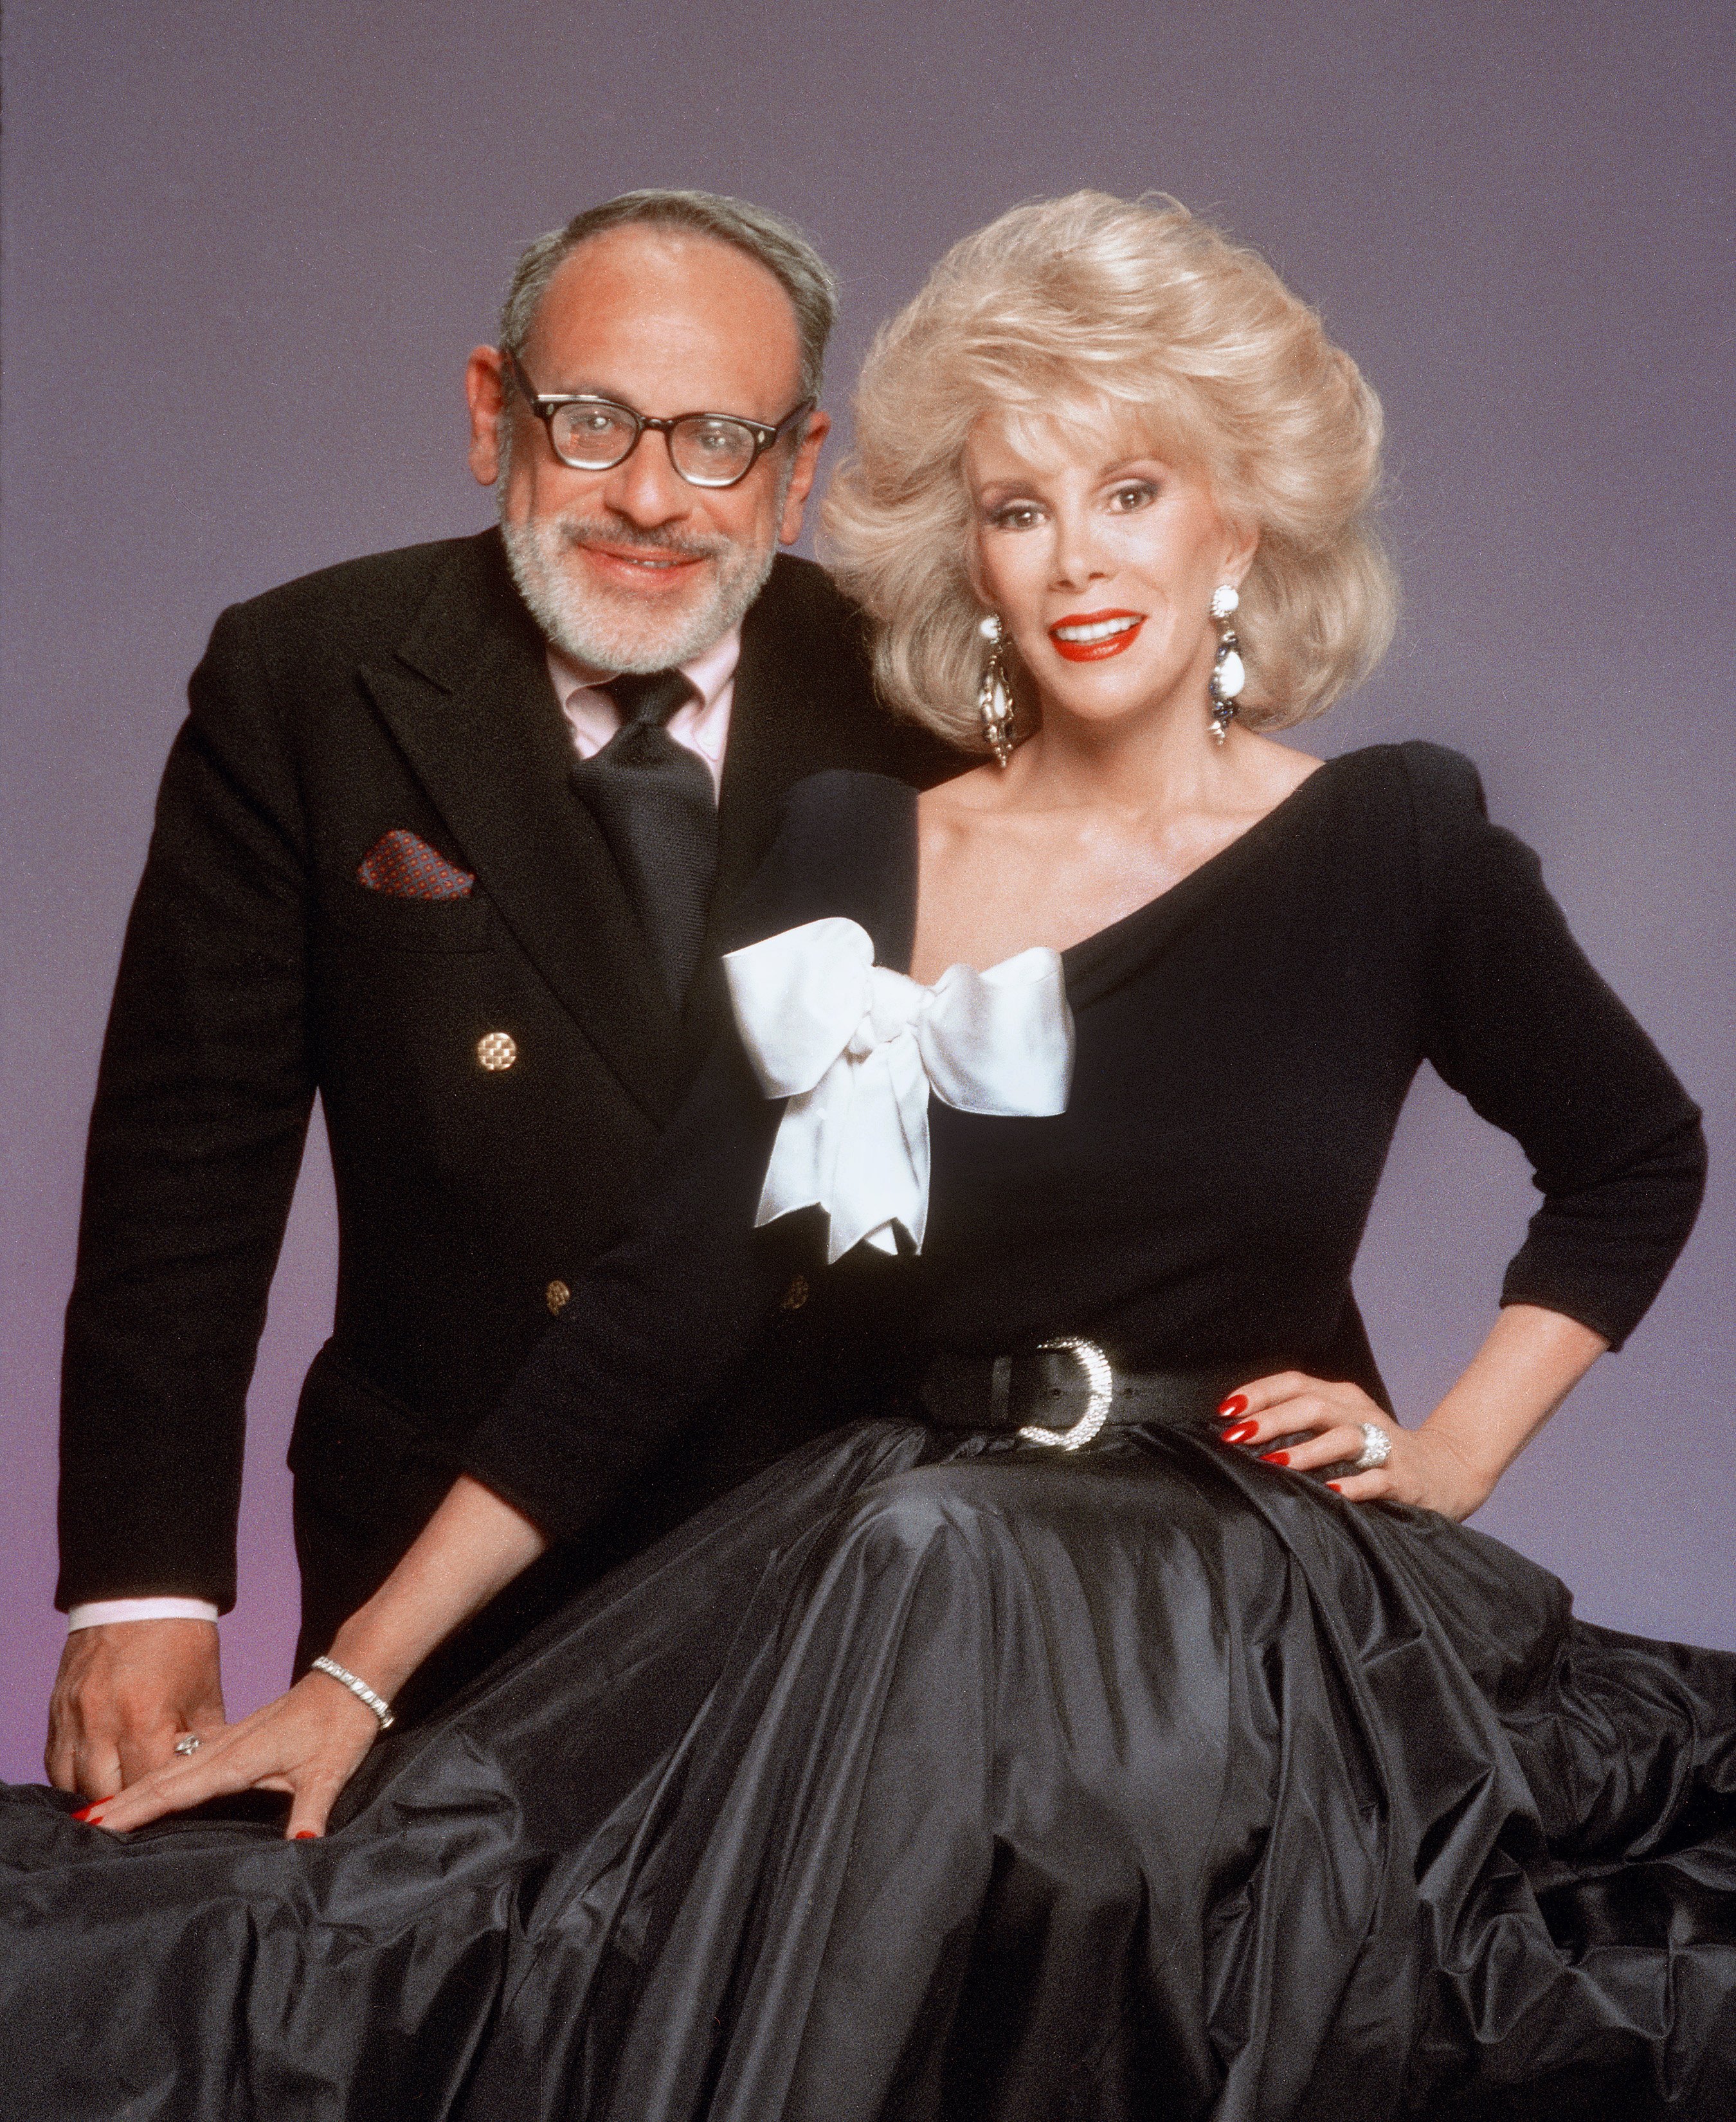 Edgar Rosenberg und Joan Rivers posieren für ein Porträt 1987 in Los Angeles, Kalifornien | Quelle: Getty Images